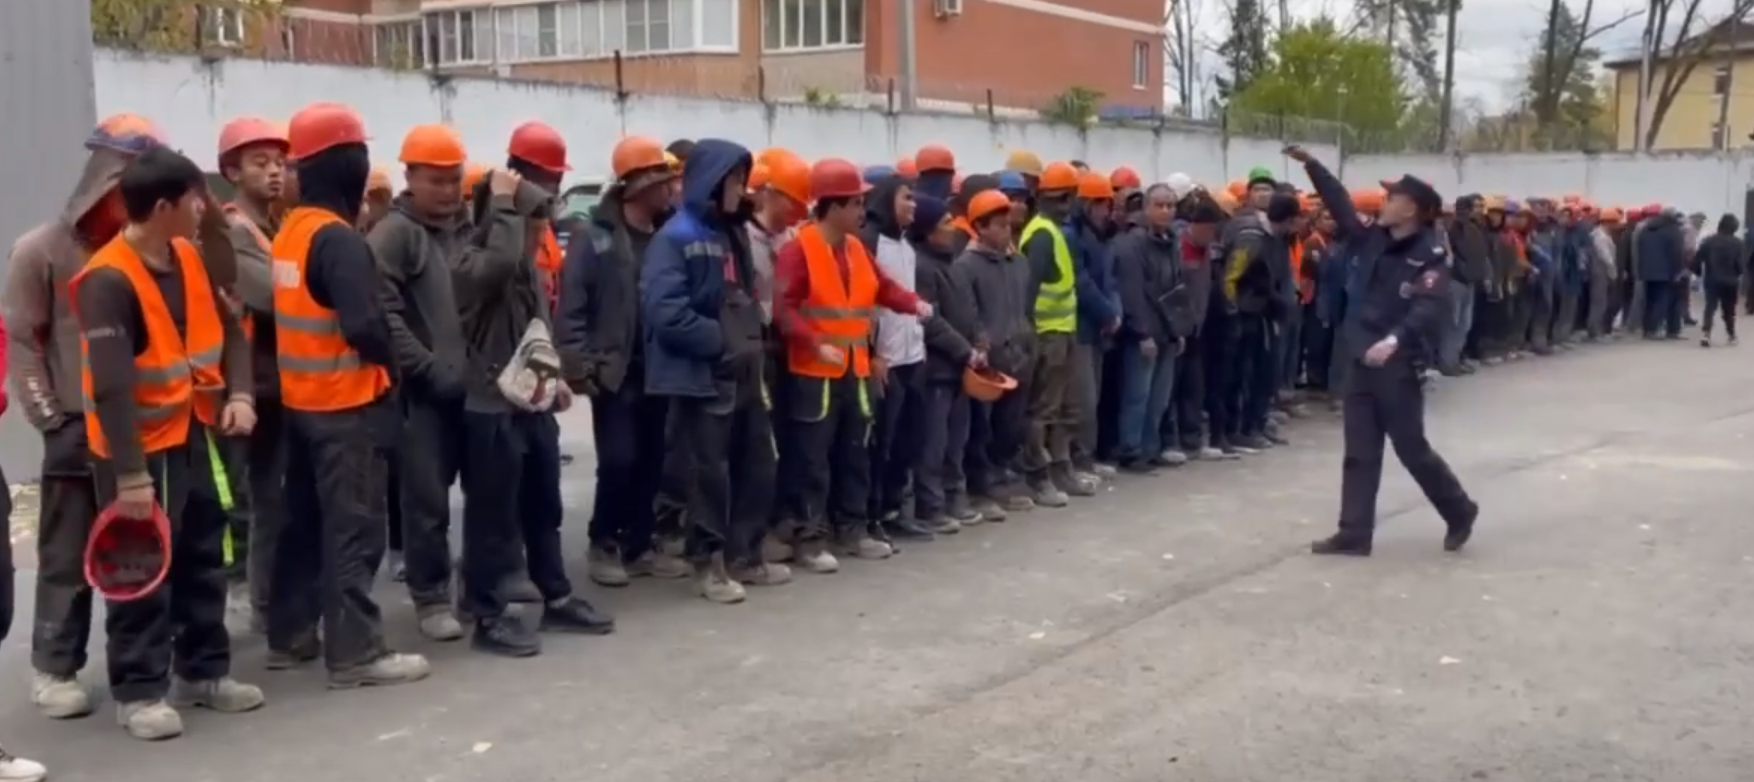 Правоохранительные органы Краснодара задержали свыше 100 мигрантов